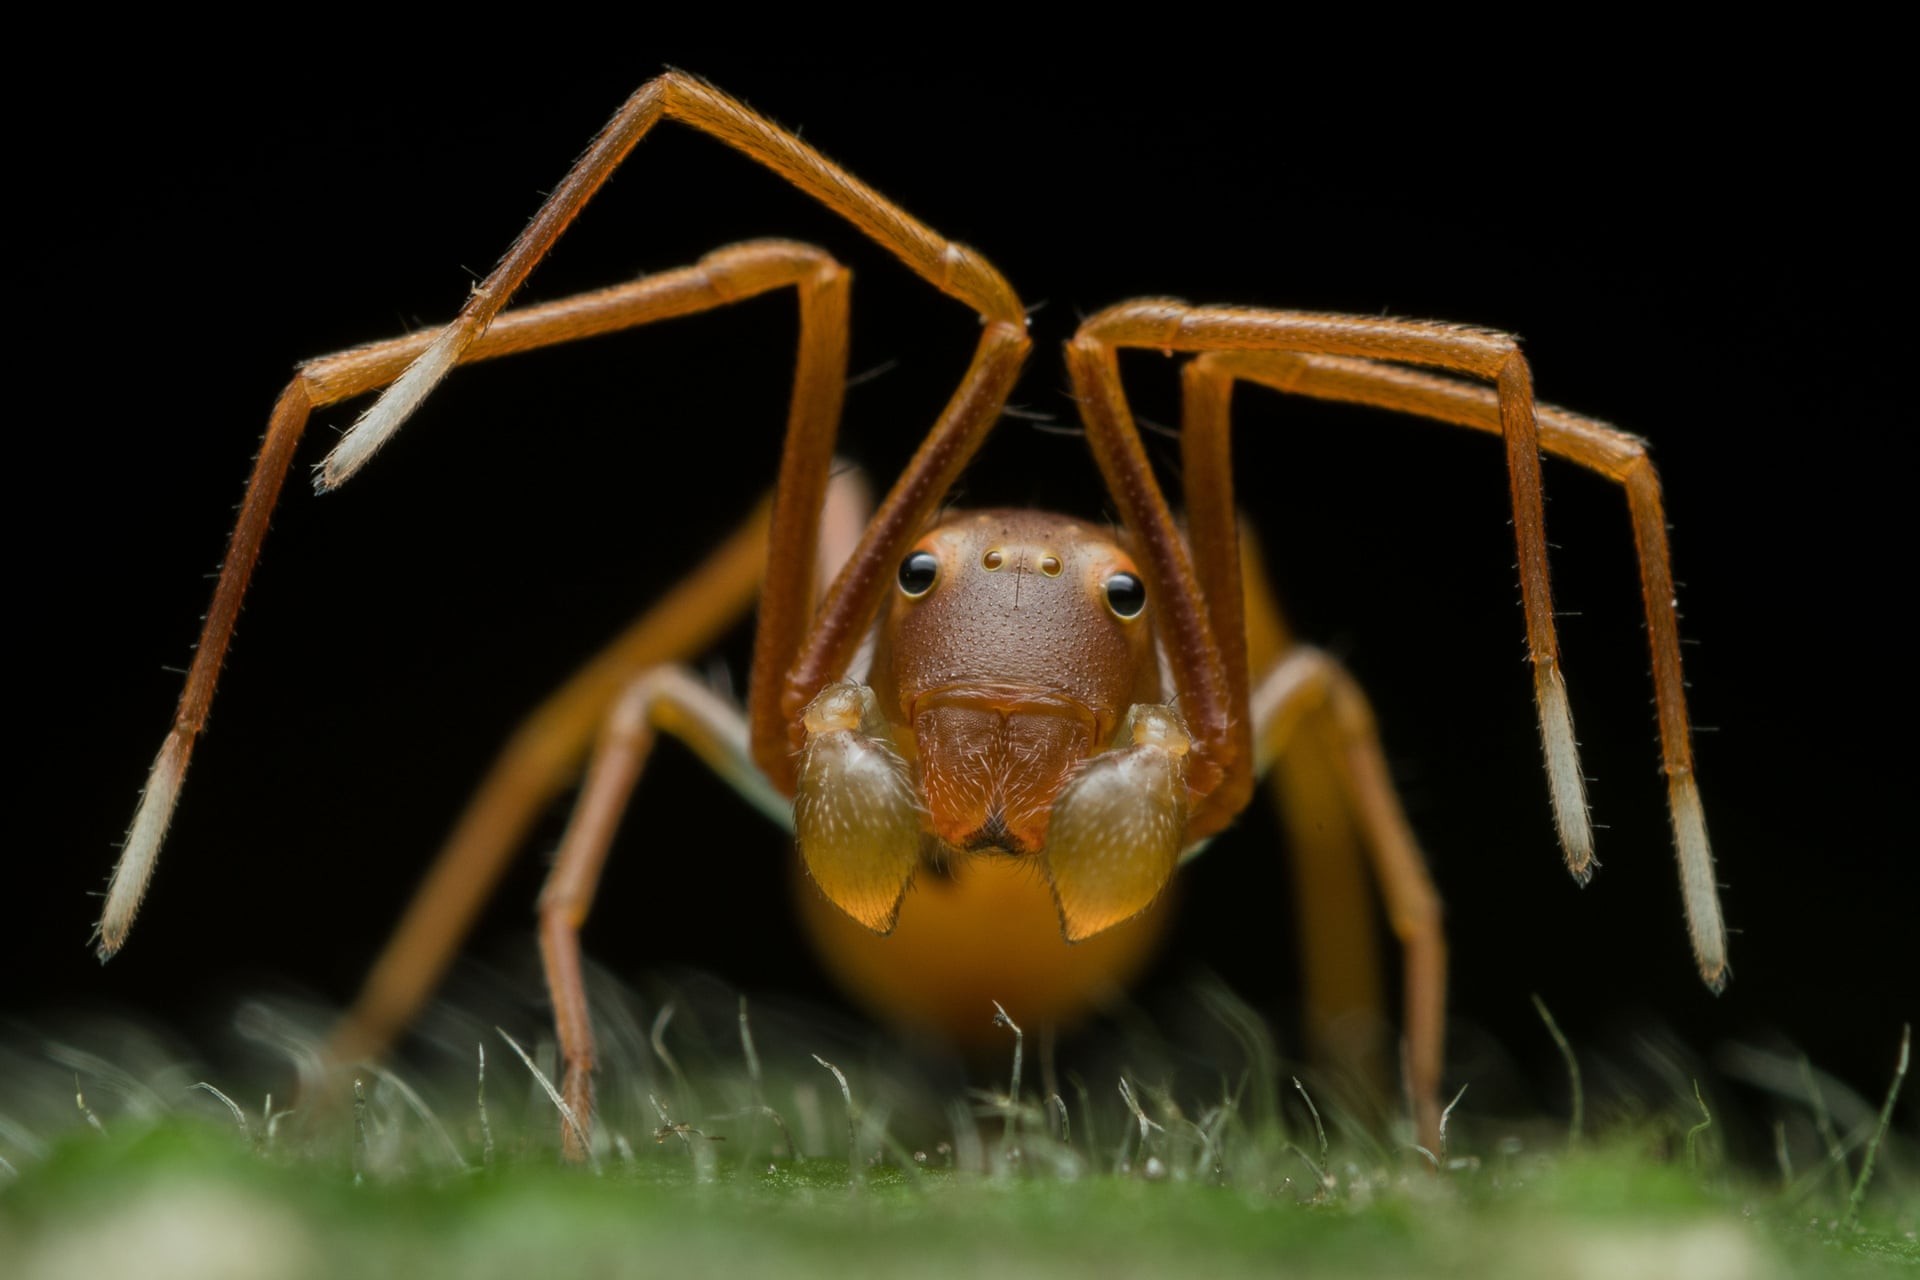 Обманчивое обличье. Паук-скакун, подражающий муравьям. Победитель в категории Портреты животных. Автор Рипан Бисвас